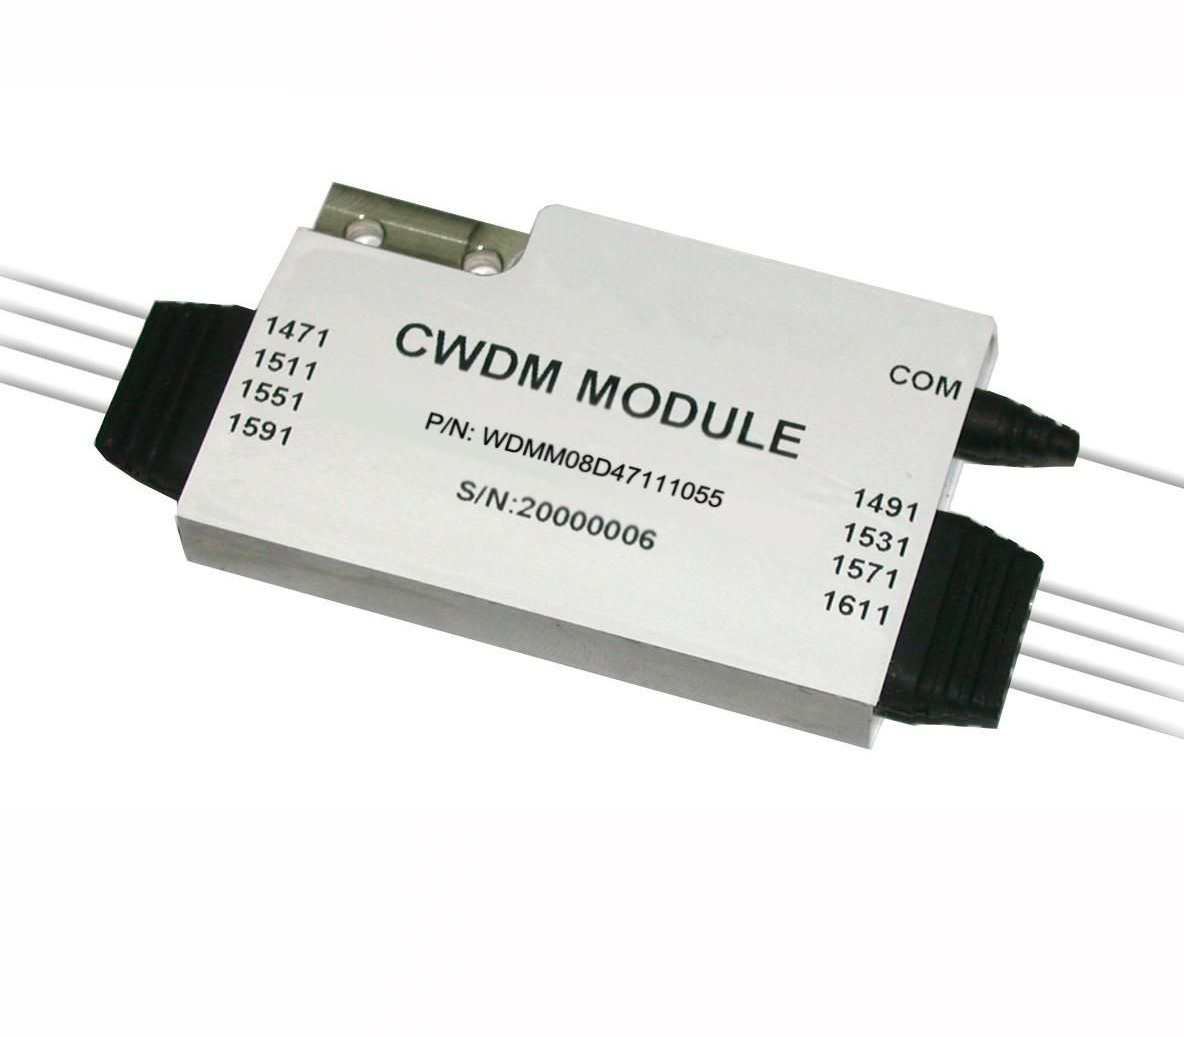 CCWDM Module